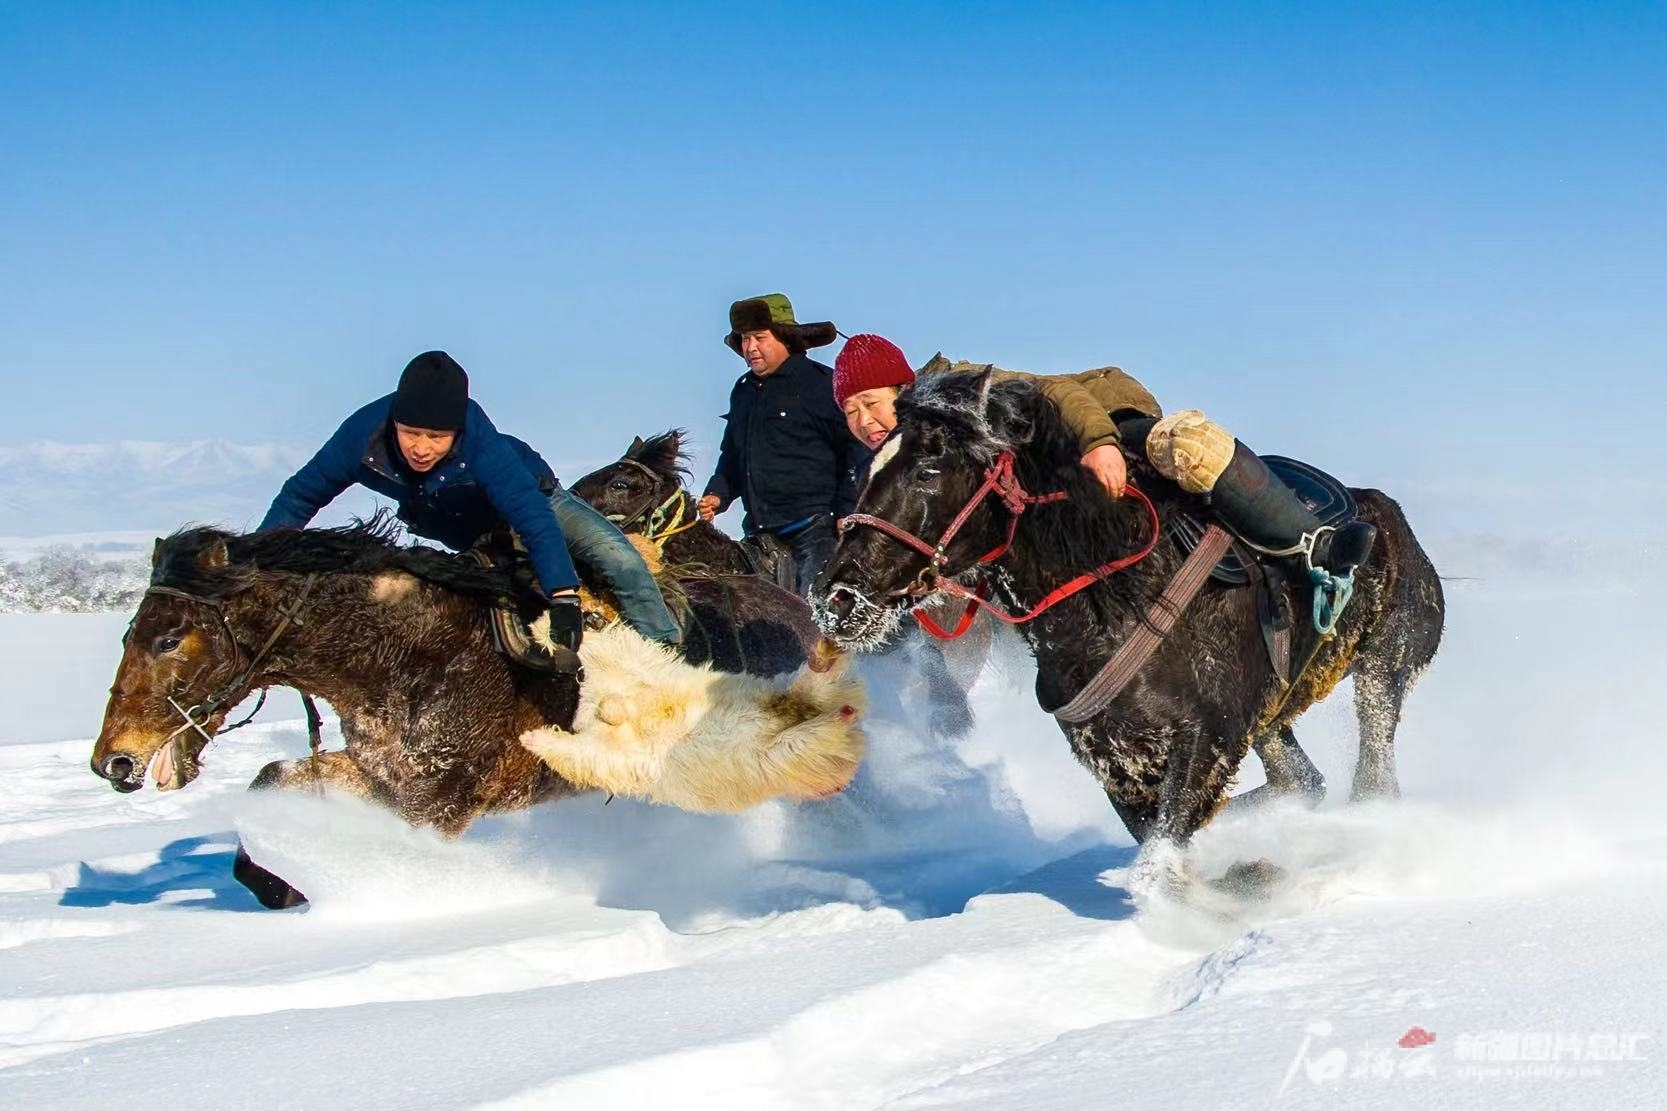 伊犁哈萨克自治州将冰雪休闲旅游与刁羊、赛马等民俗活动相集合，打造民俗冰雪休闲游。秦杰摄